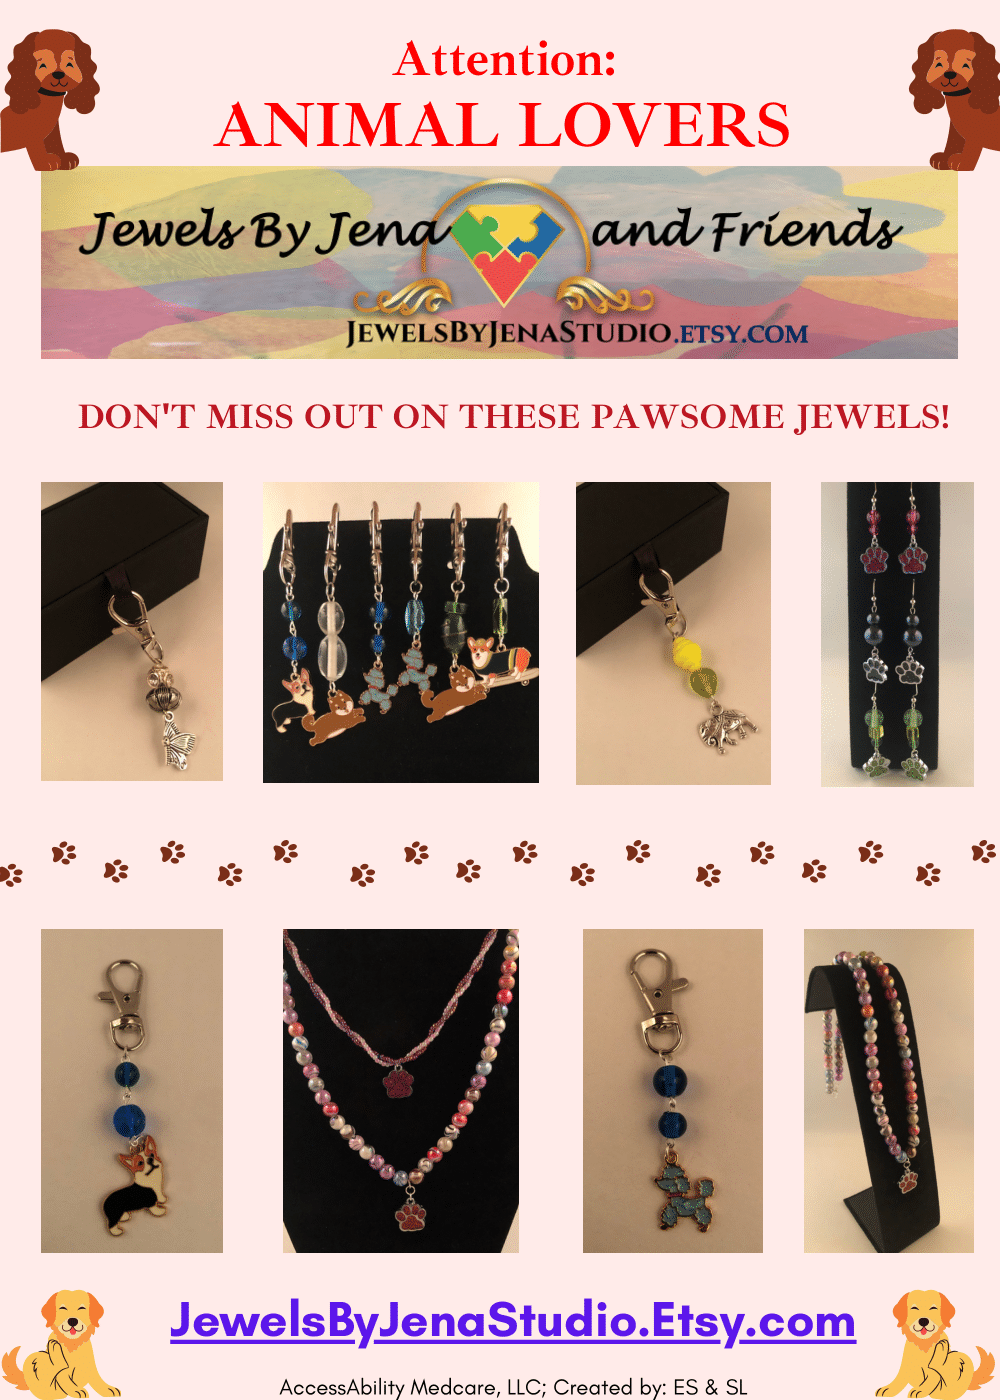 jewels by jena animal themed jewelry flyer